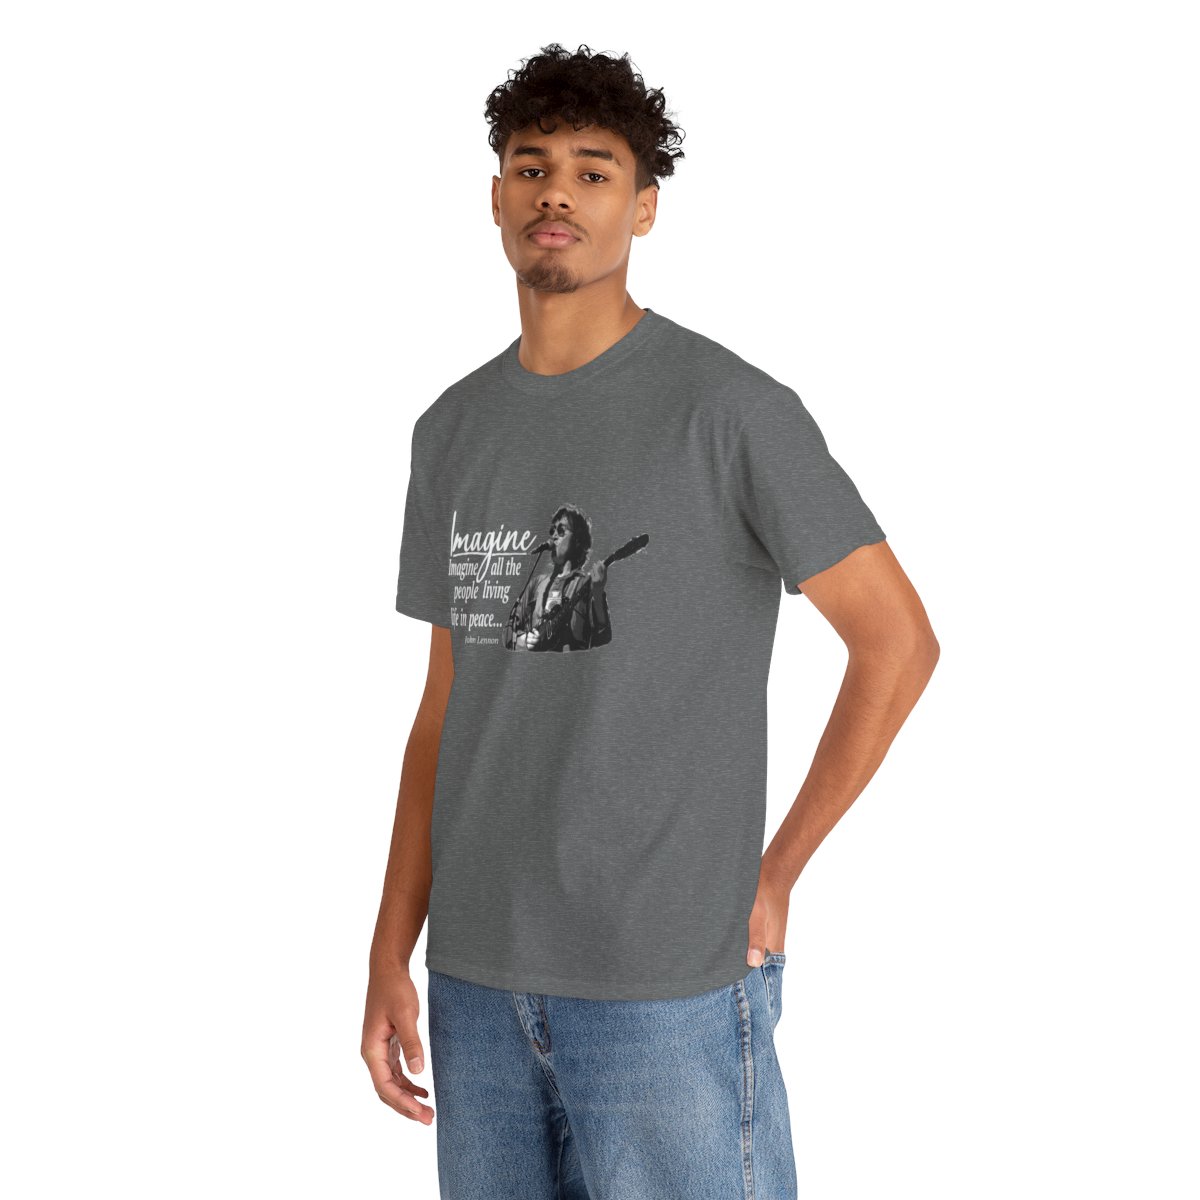 John Lennon's Imagine on a Dark Cotton T-shirt product thumbnail image